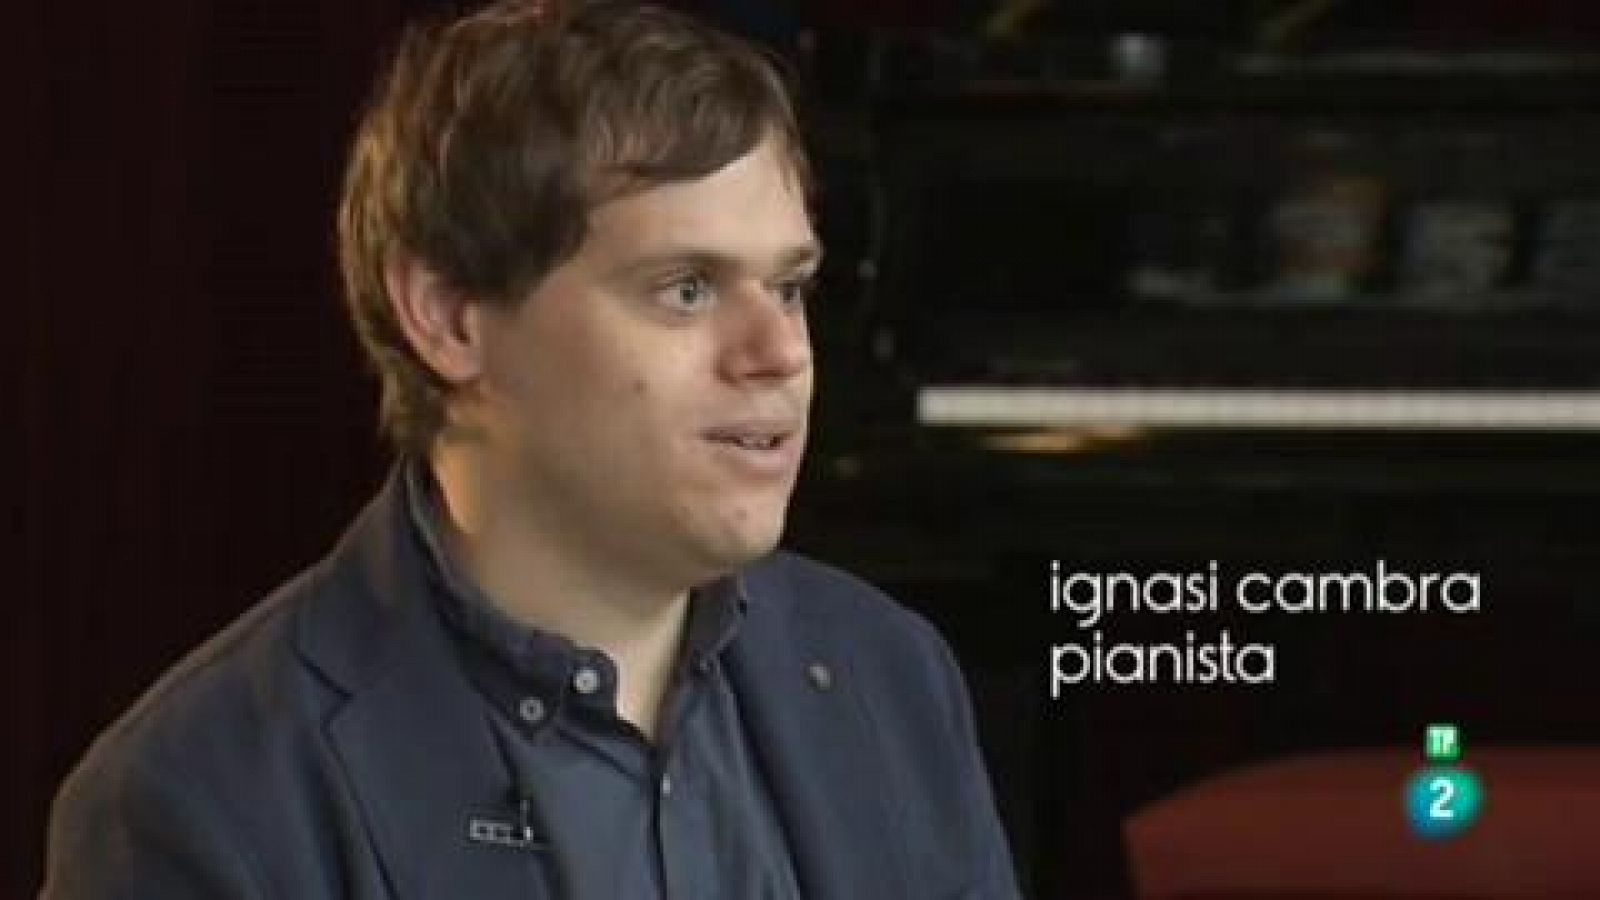 Punts de vista: Ignasi Cambra, pianista | RTVE Play